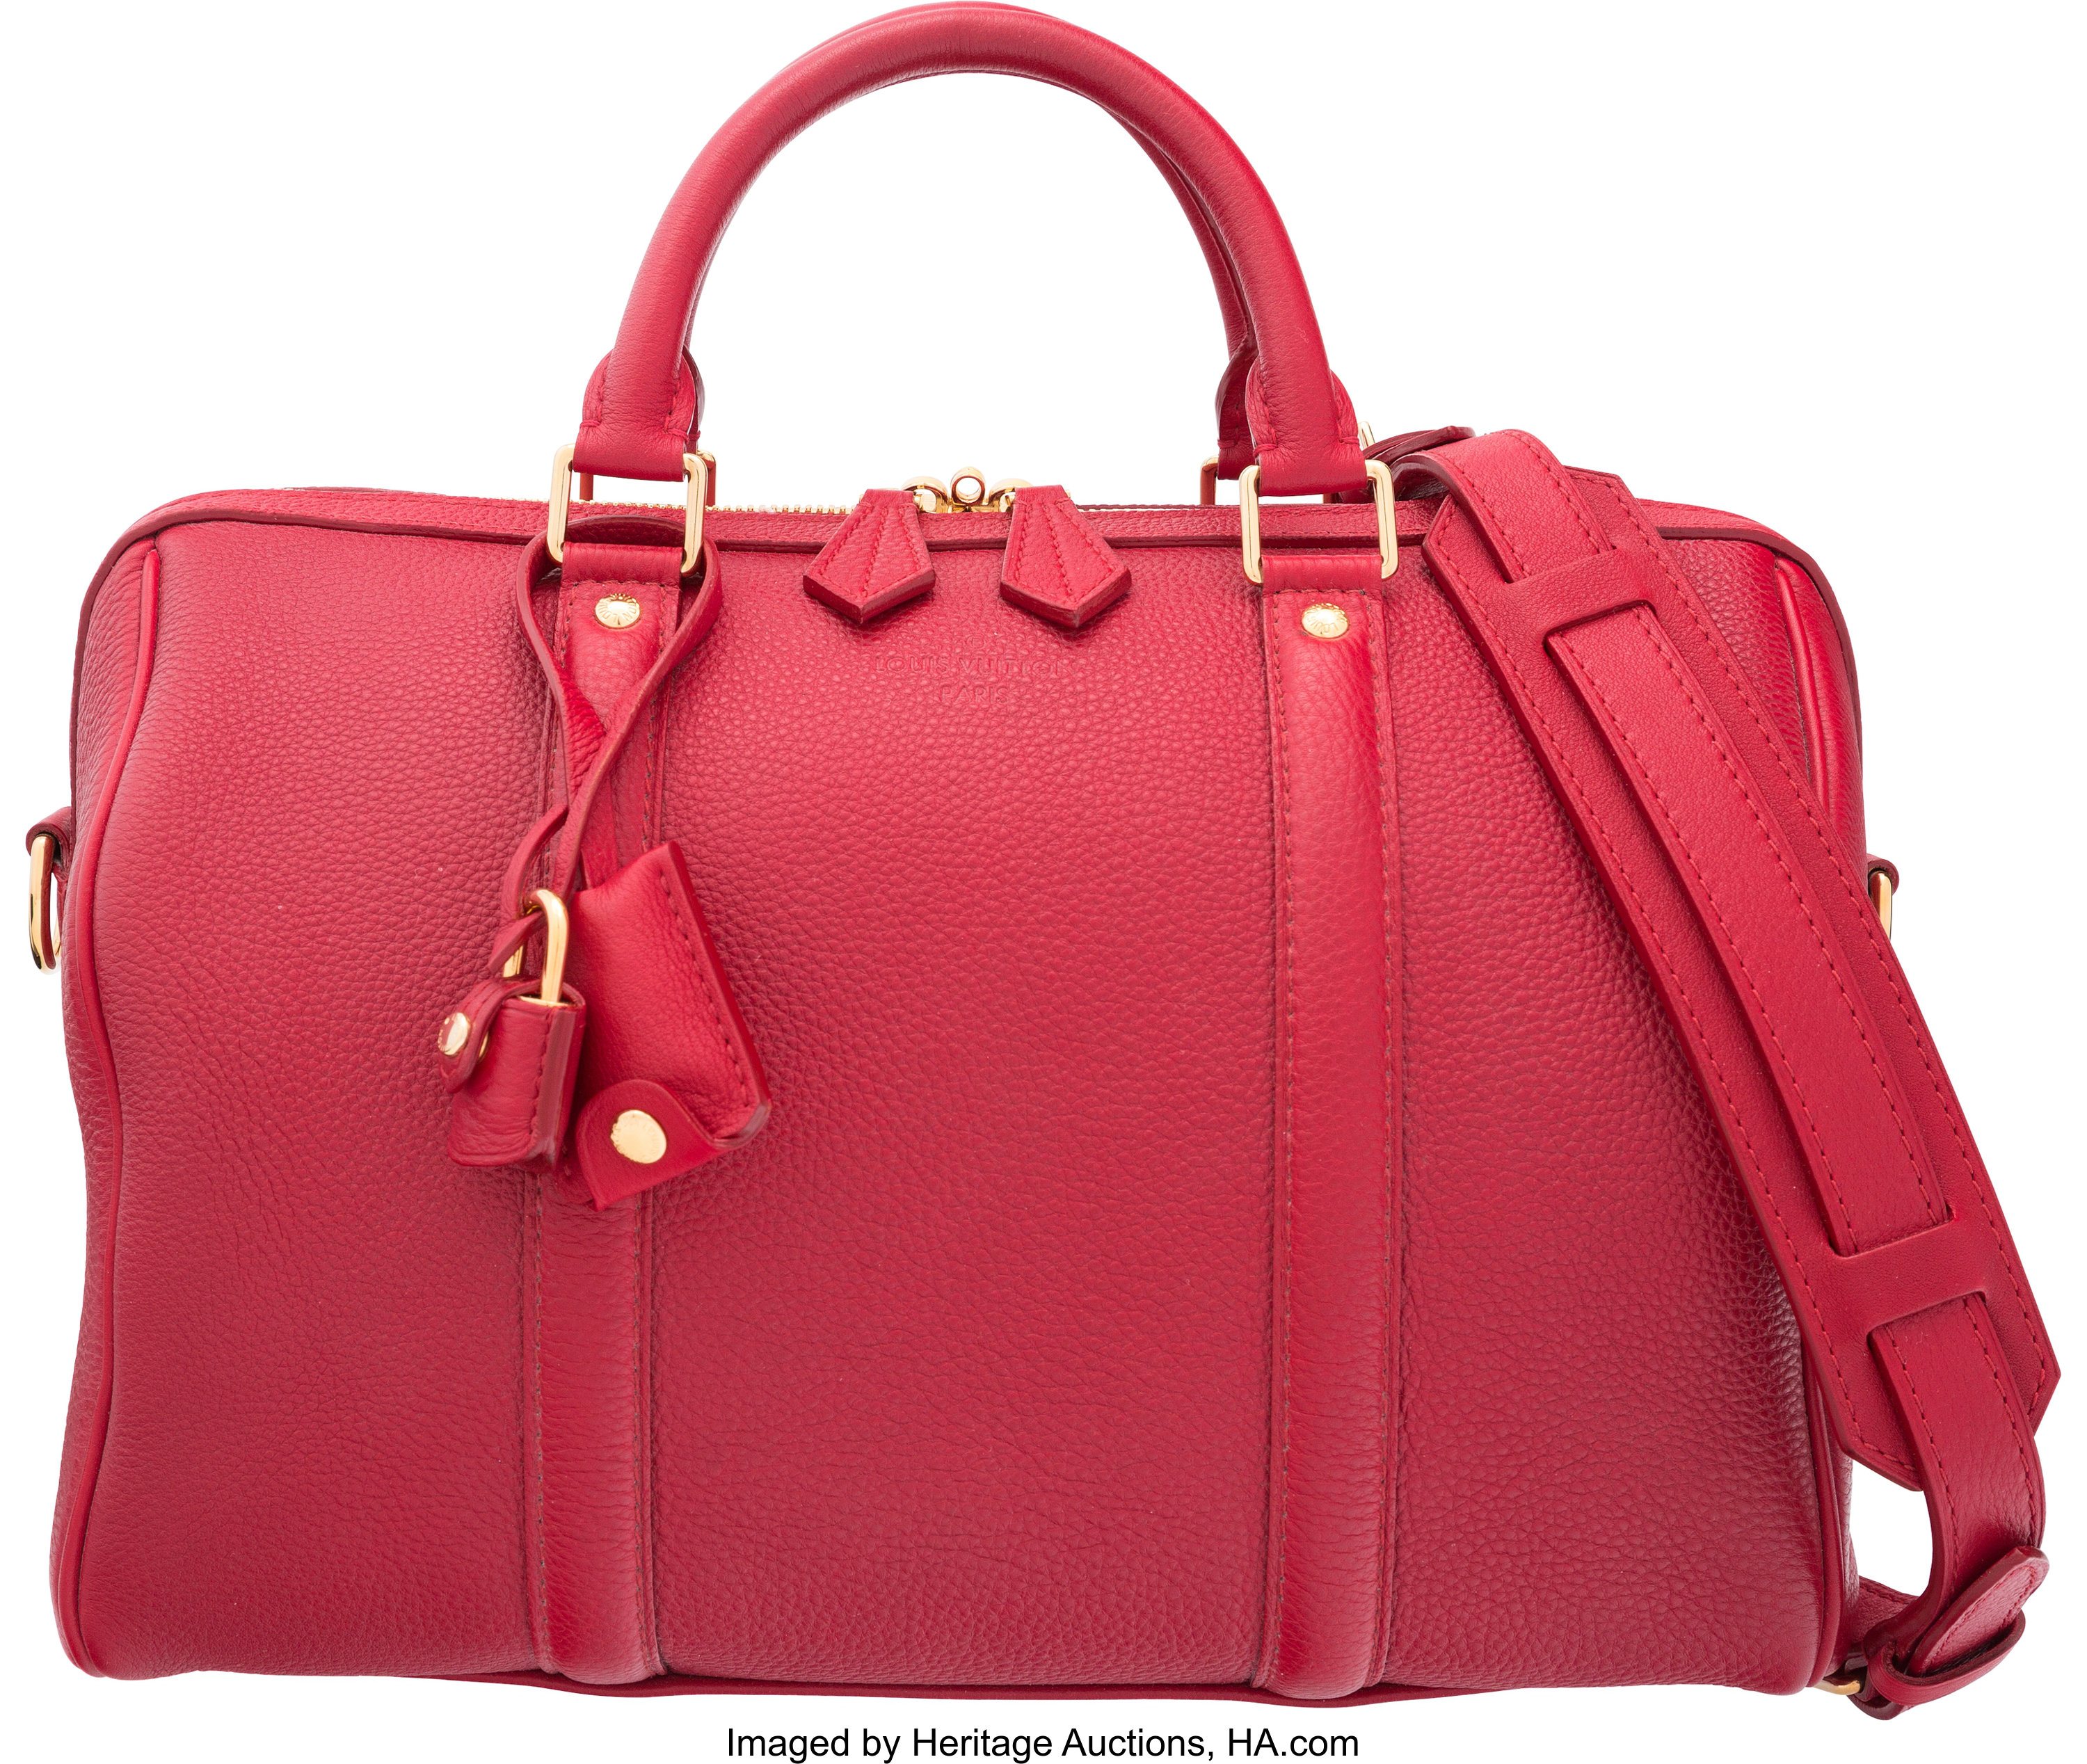 Louis Vuitton Cherry Red Leather Sofia Coppola Speedy 30 Bag